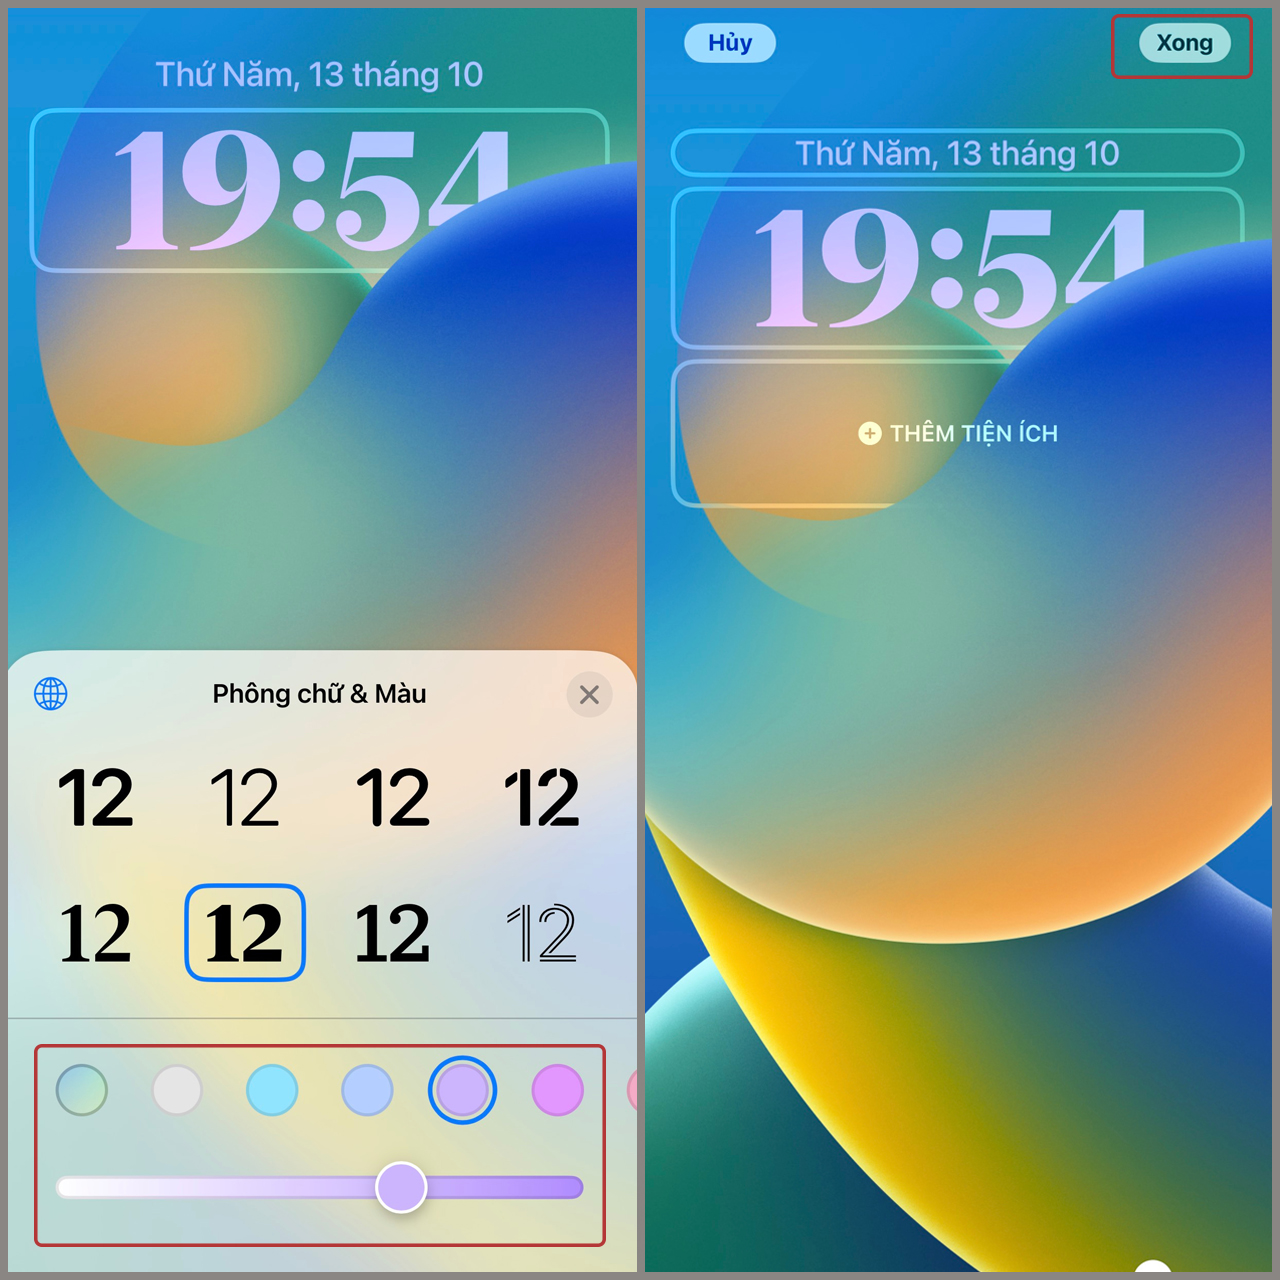 Tuỳ chỉnh đồng hồ iOS 16 được cập nhật mới với giao diện đẹp mắt và nhiều tính năng độc đáo, giúp người dùng dễ dàng tùy chỉnh theo sở thích cá nhân. Với iOS 16, bạn có thể thay đổi màu sắc, font chữ, và thêm các thông tin đầy đủ về thời tiết, lịch và các ứng dụng yêu thích trực tiếp trên màn hình đồng hồ của mình.